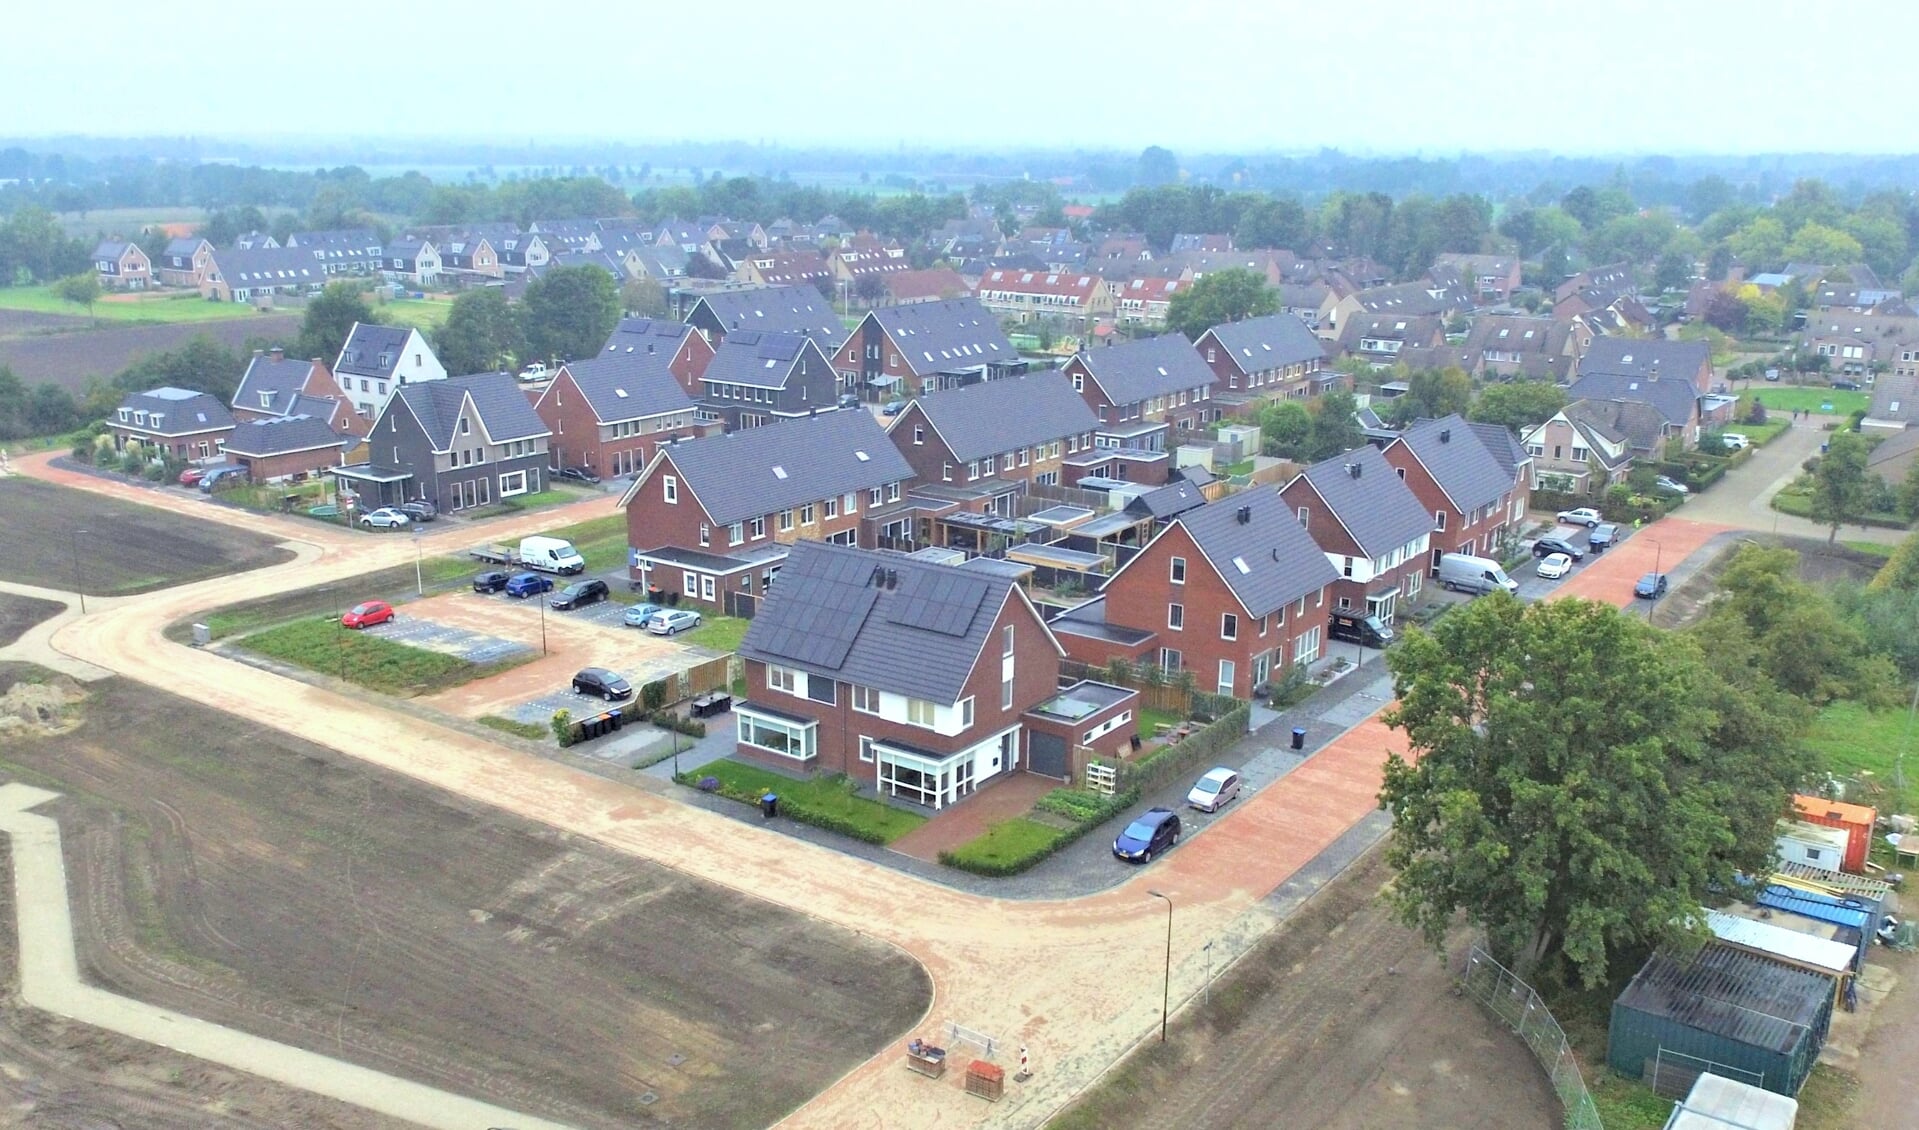 Nieuwbouwwijk Dwarsakker in Zwartebroek illustreert de groei van Barneveld  De gemeente groeit gestaag en als die groei zich op dezelfde voet doorzet, heeft de gemeente in 2040 zo'n 80.000 inwoners.